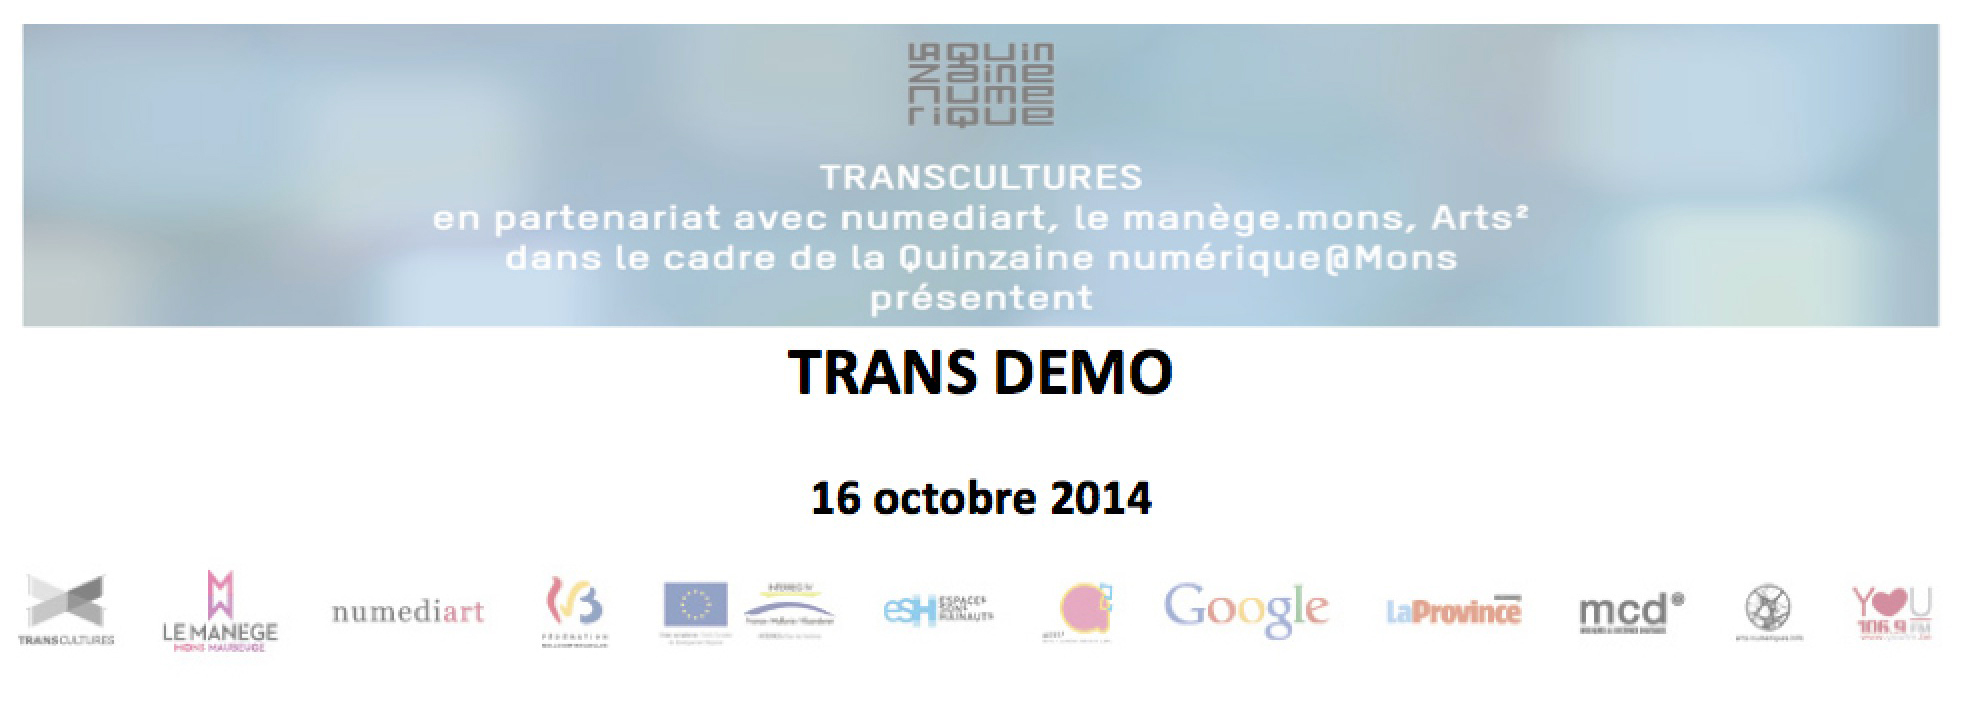 Transdemo_Vice-Versa_Quinzaine-Numerique_Transcultures-2014